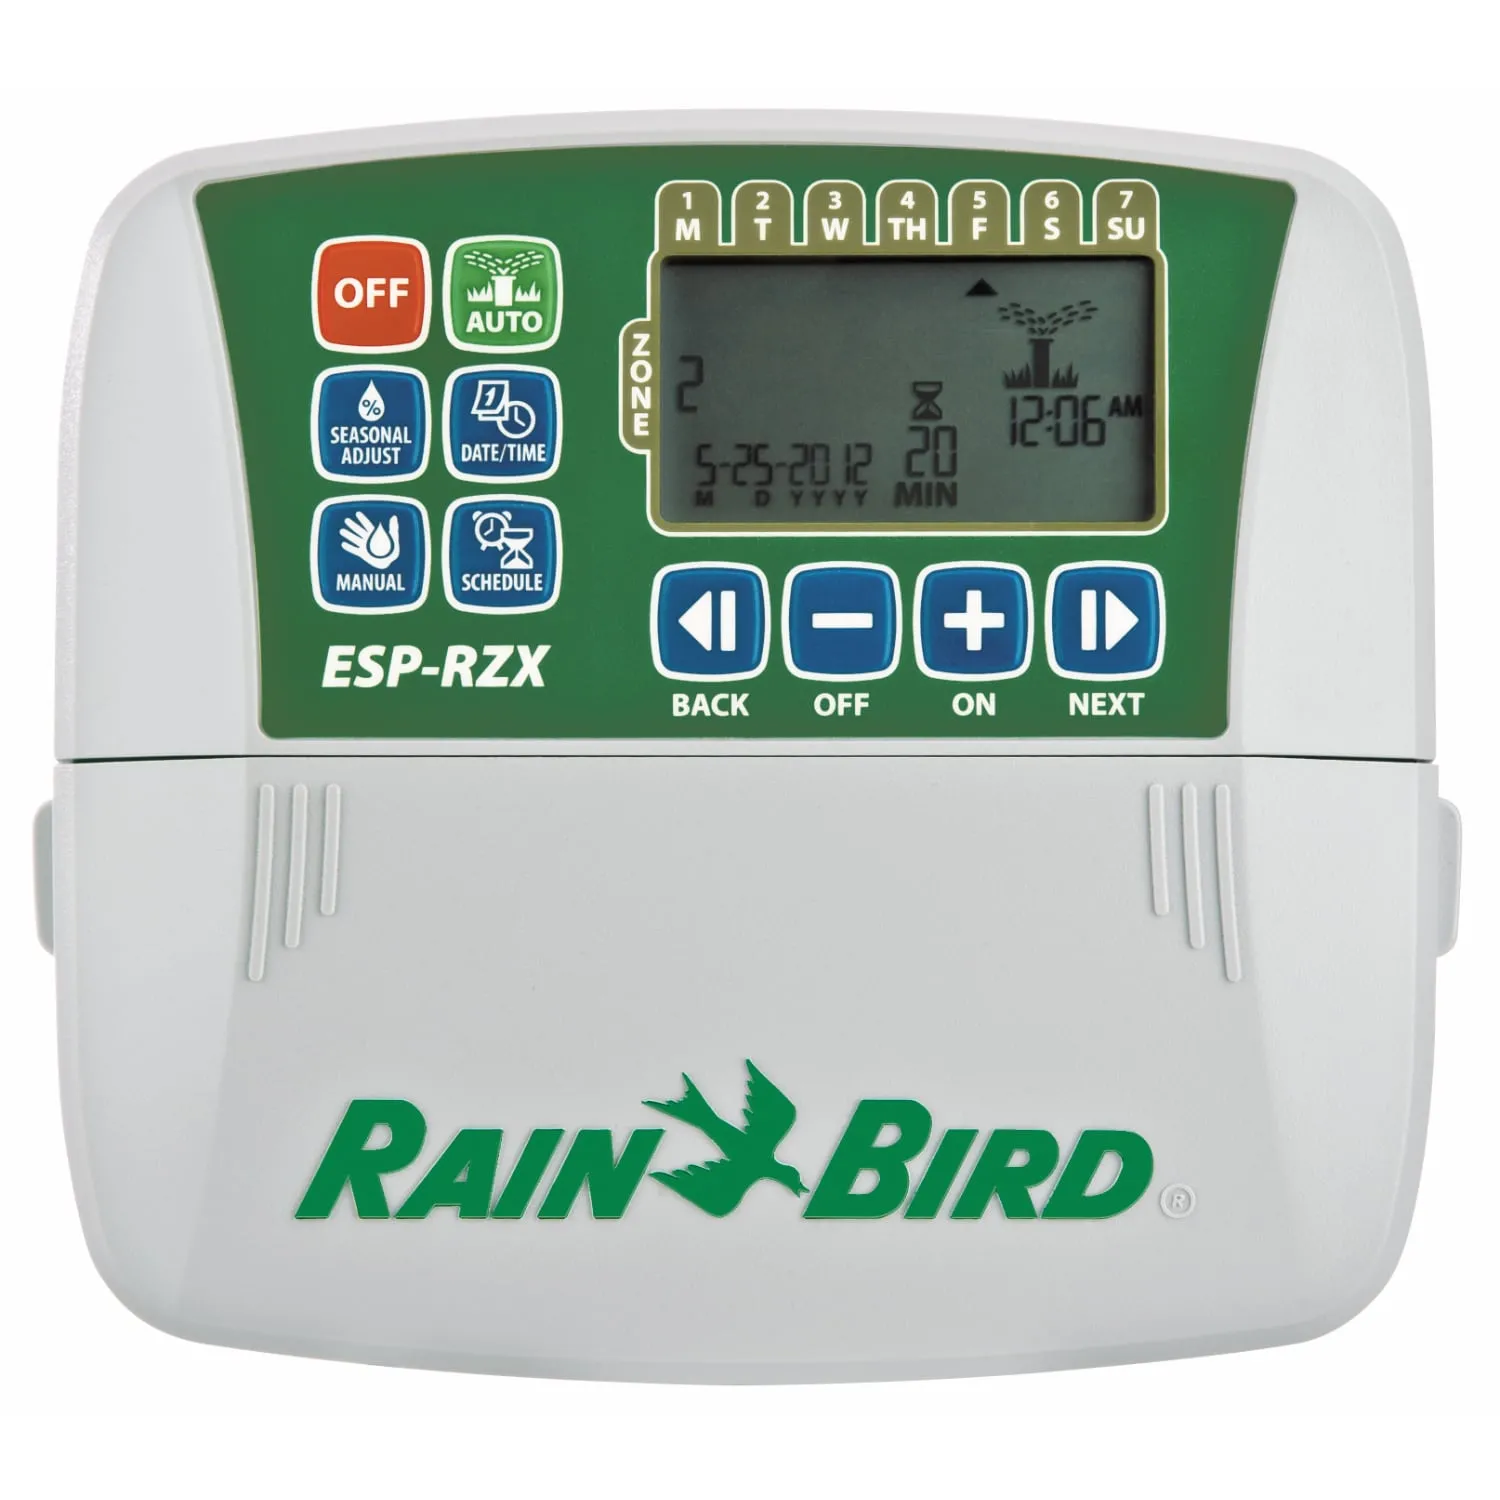 Пульт управления ESP-RZXe4i с функцией Wi-Fi, внутренний (RAIN BIRD)